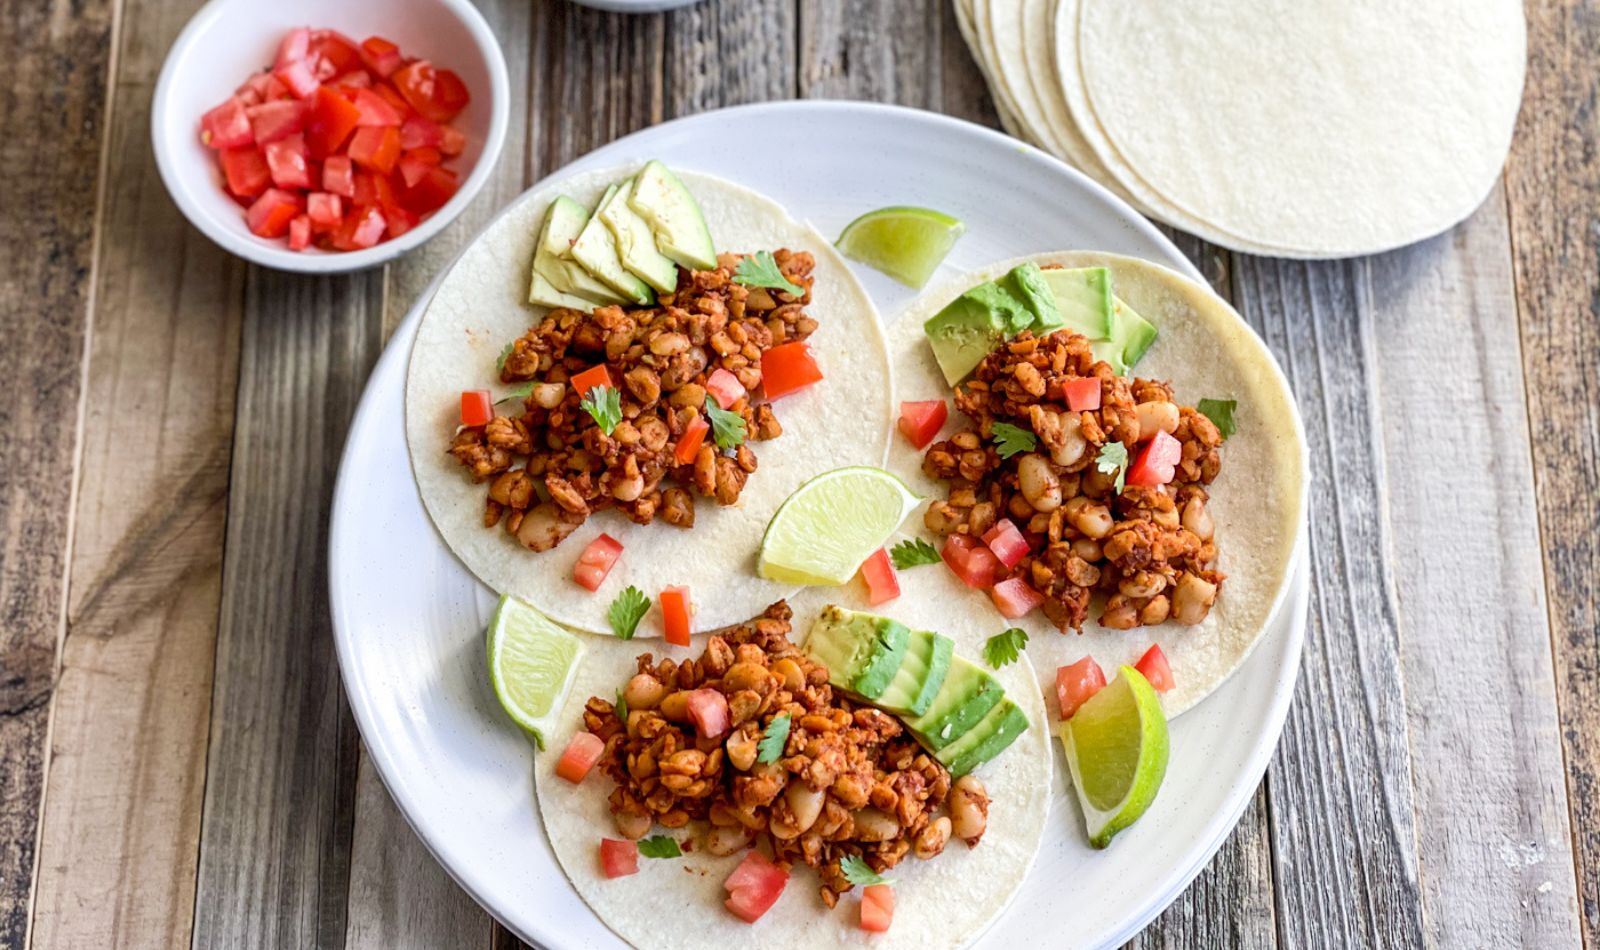 Vegan Tempeh Tacos